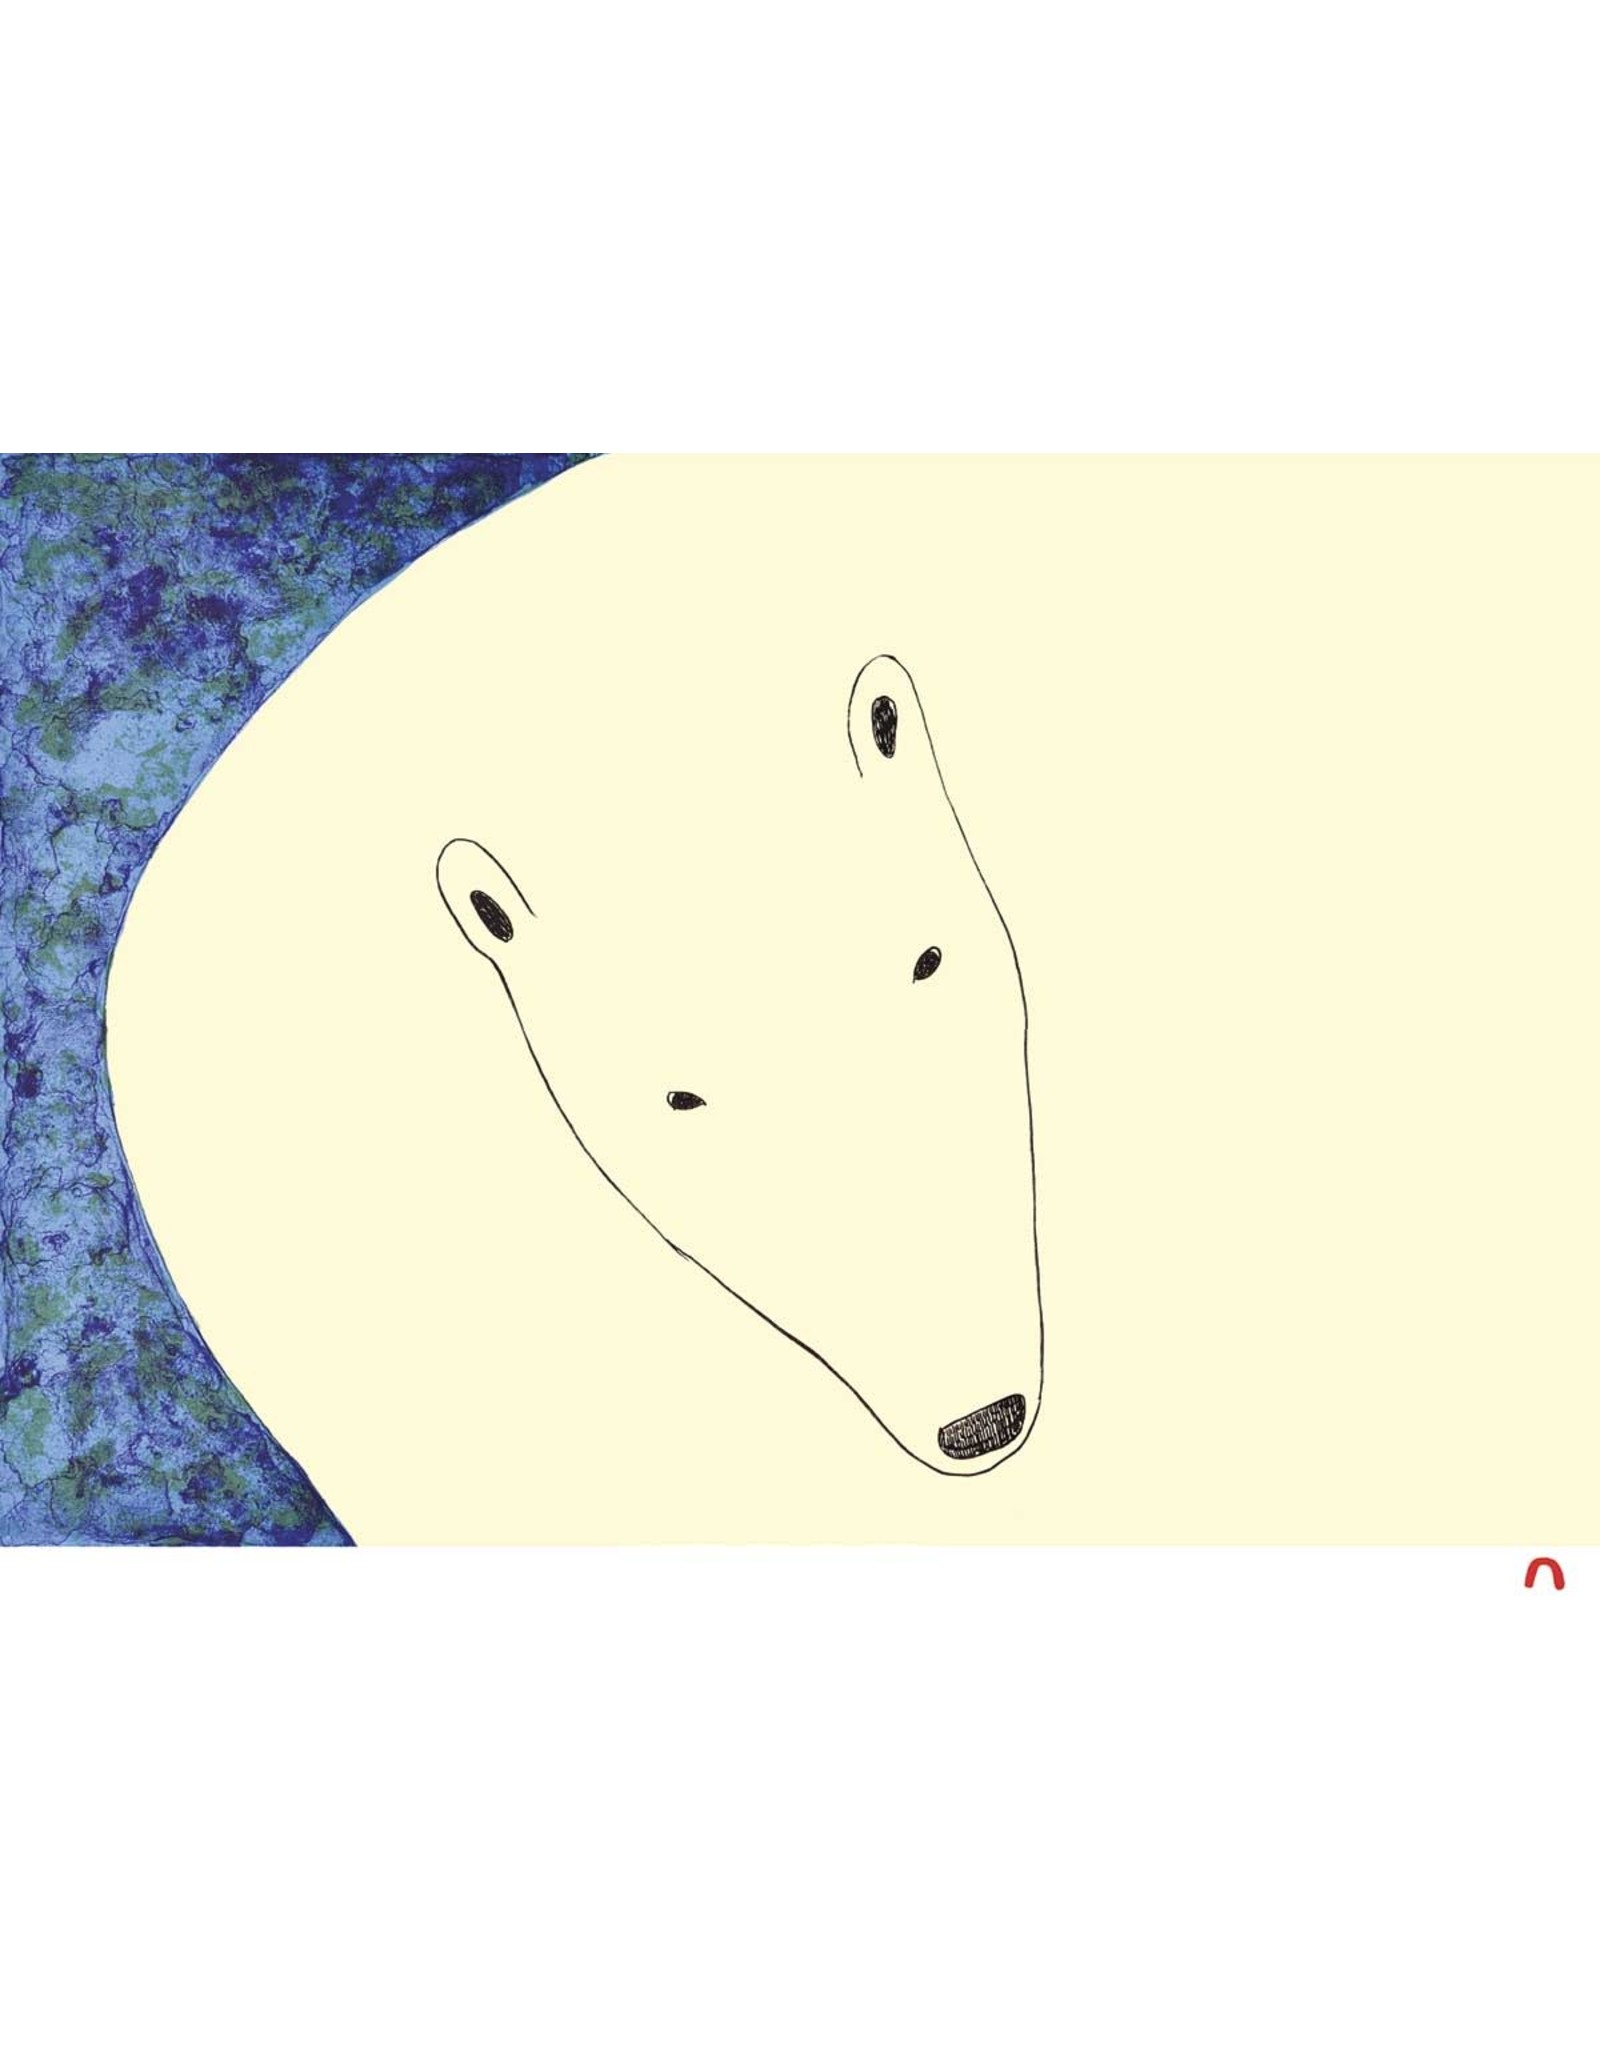 Curious Bear by Ningeokuluk Teevee Card